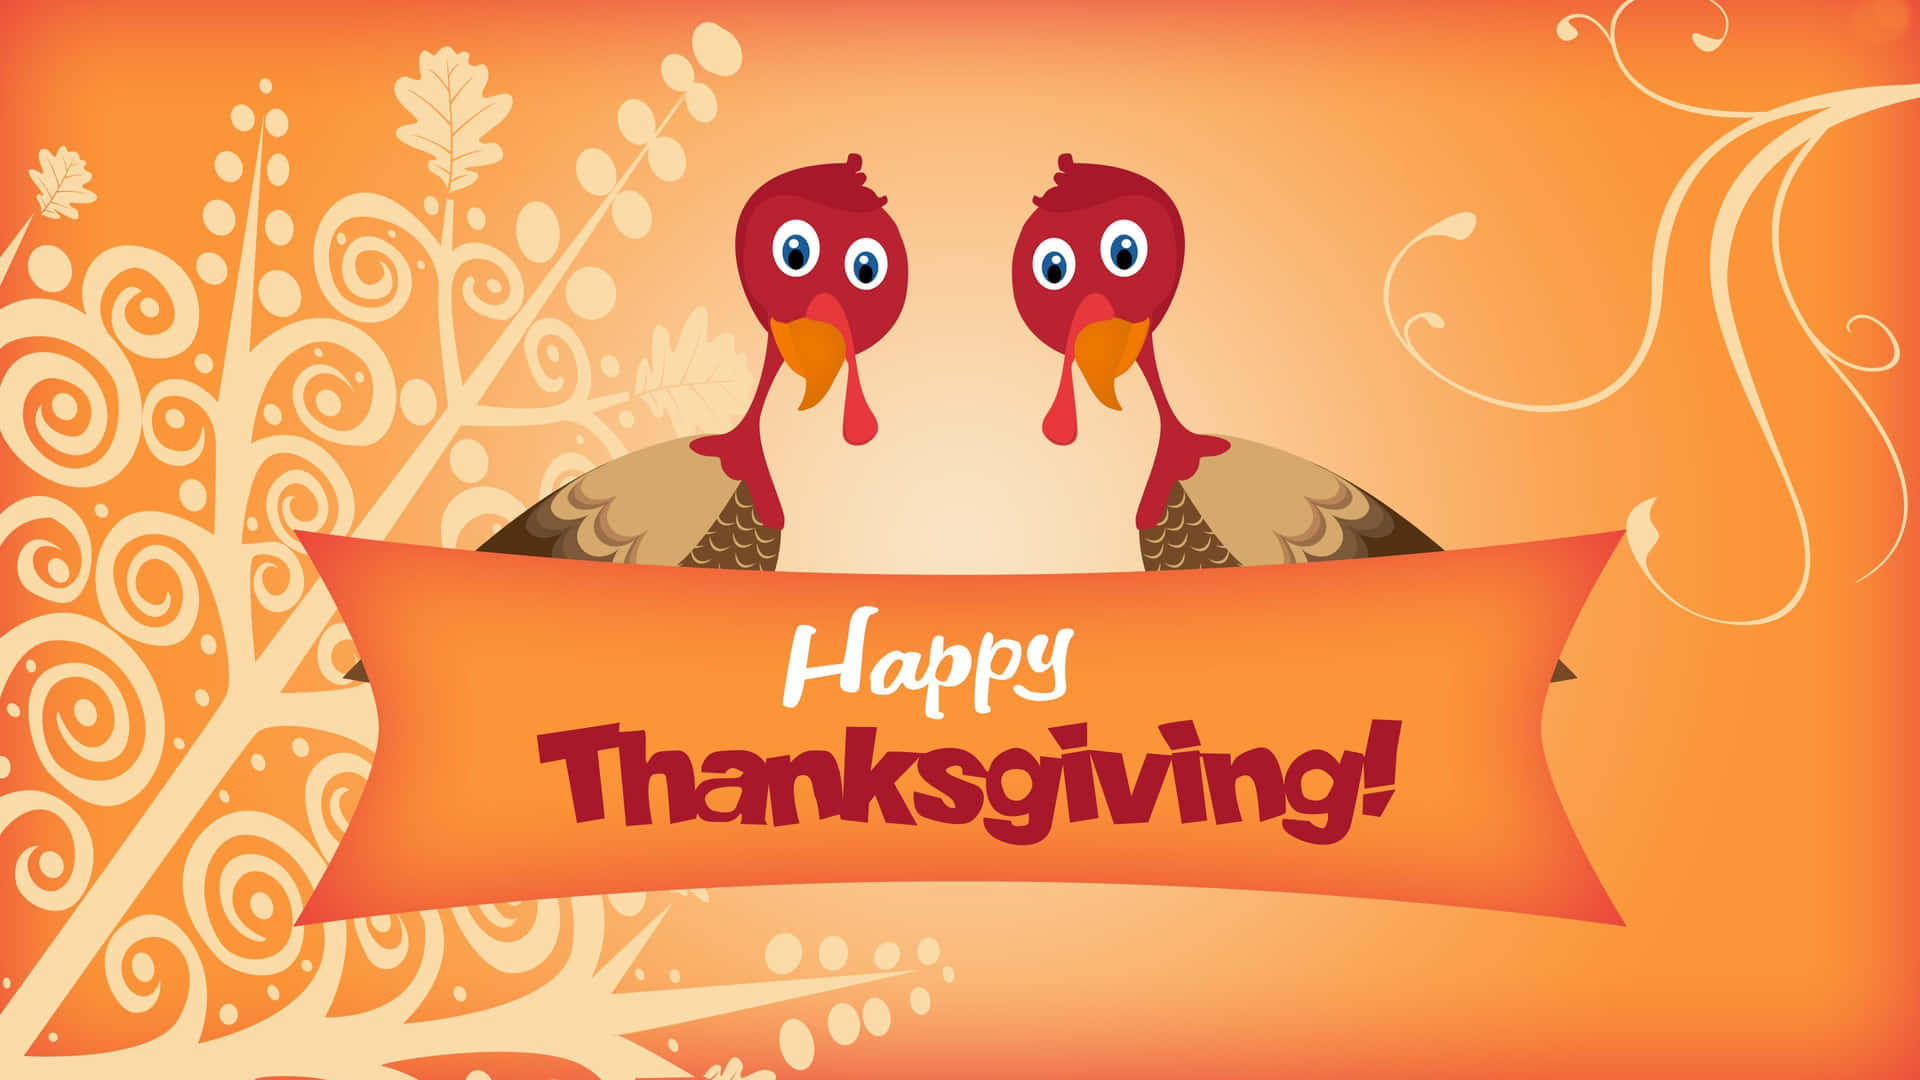 Let us Thanksgiving together! Wallpaper